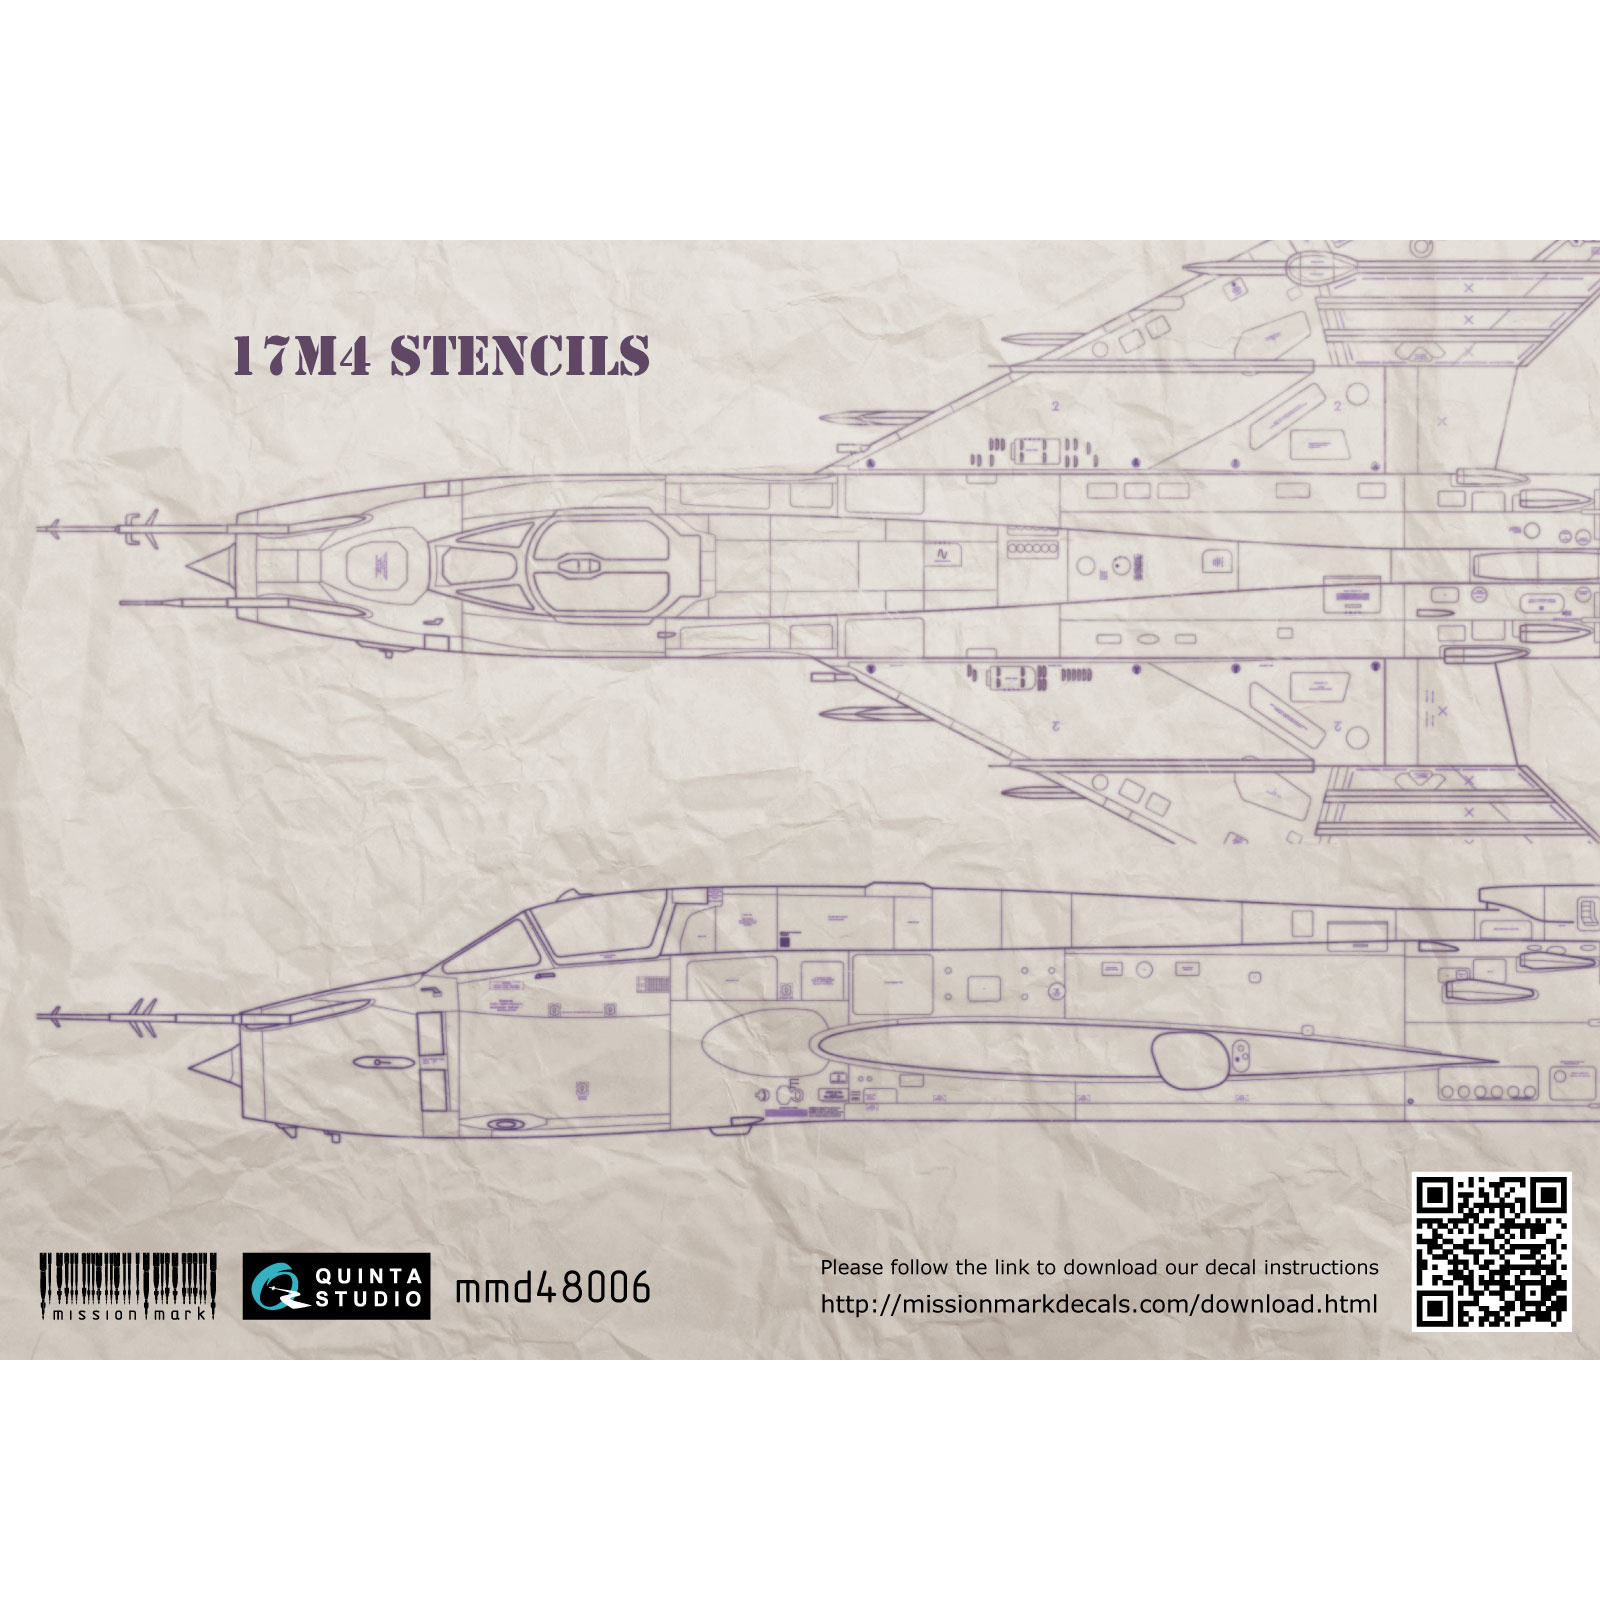 MMD48006 Quinta Studio 1/48 Decal Sukhoi-17M4 (technical inscriptions)